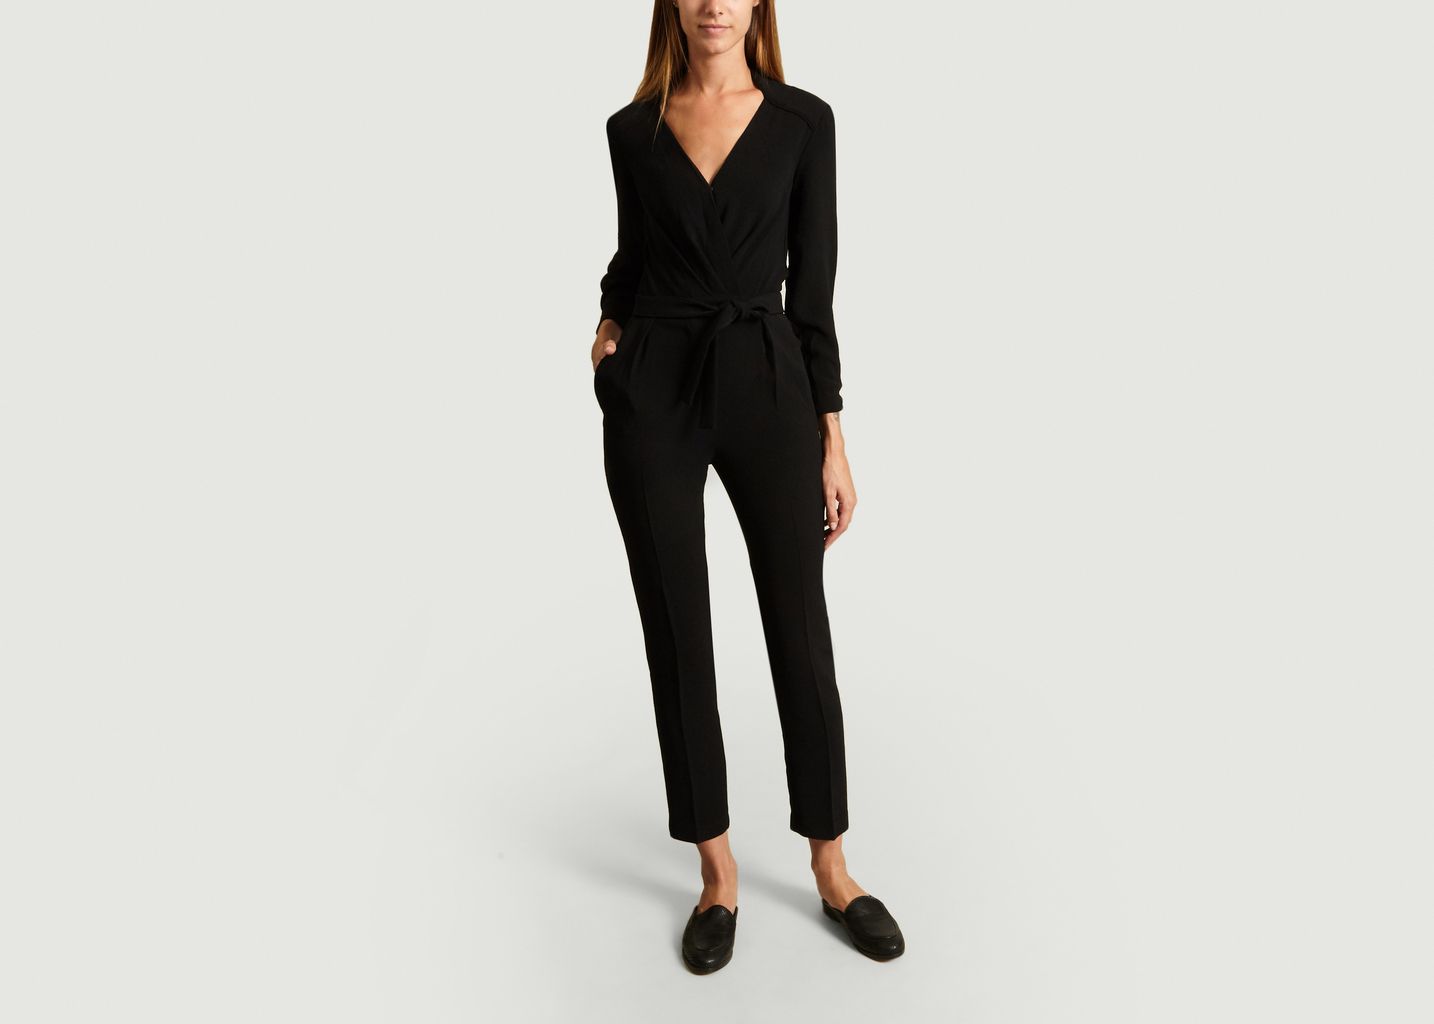 black jumpsuit with zipper